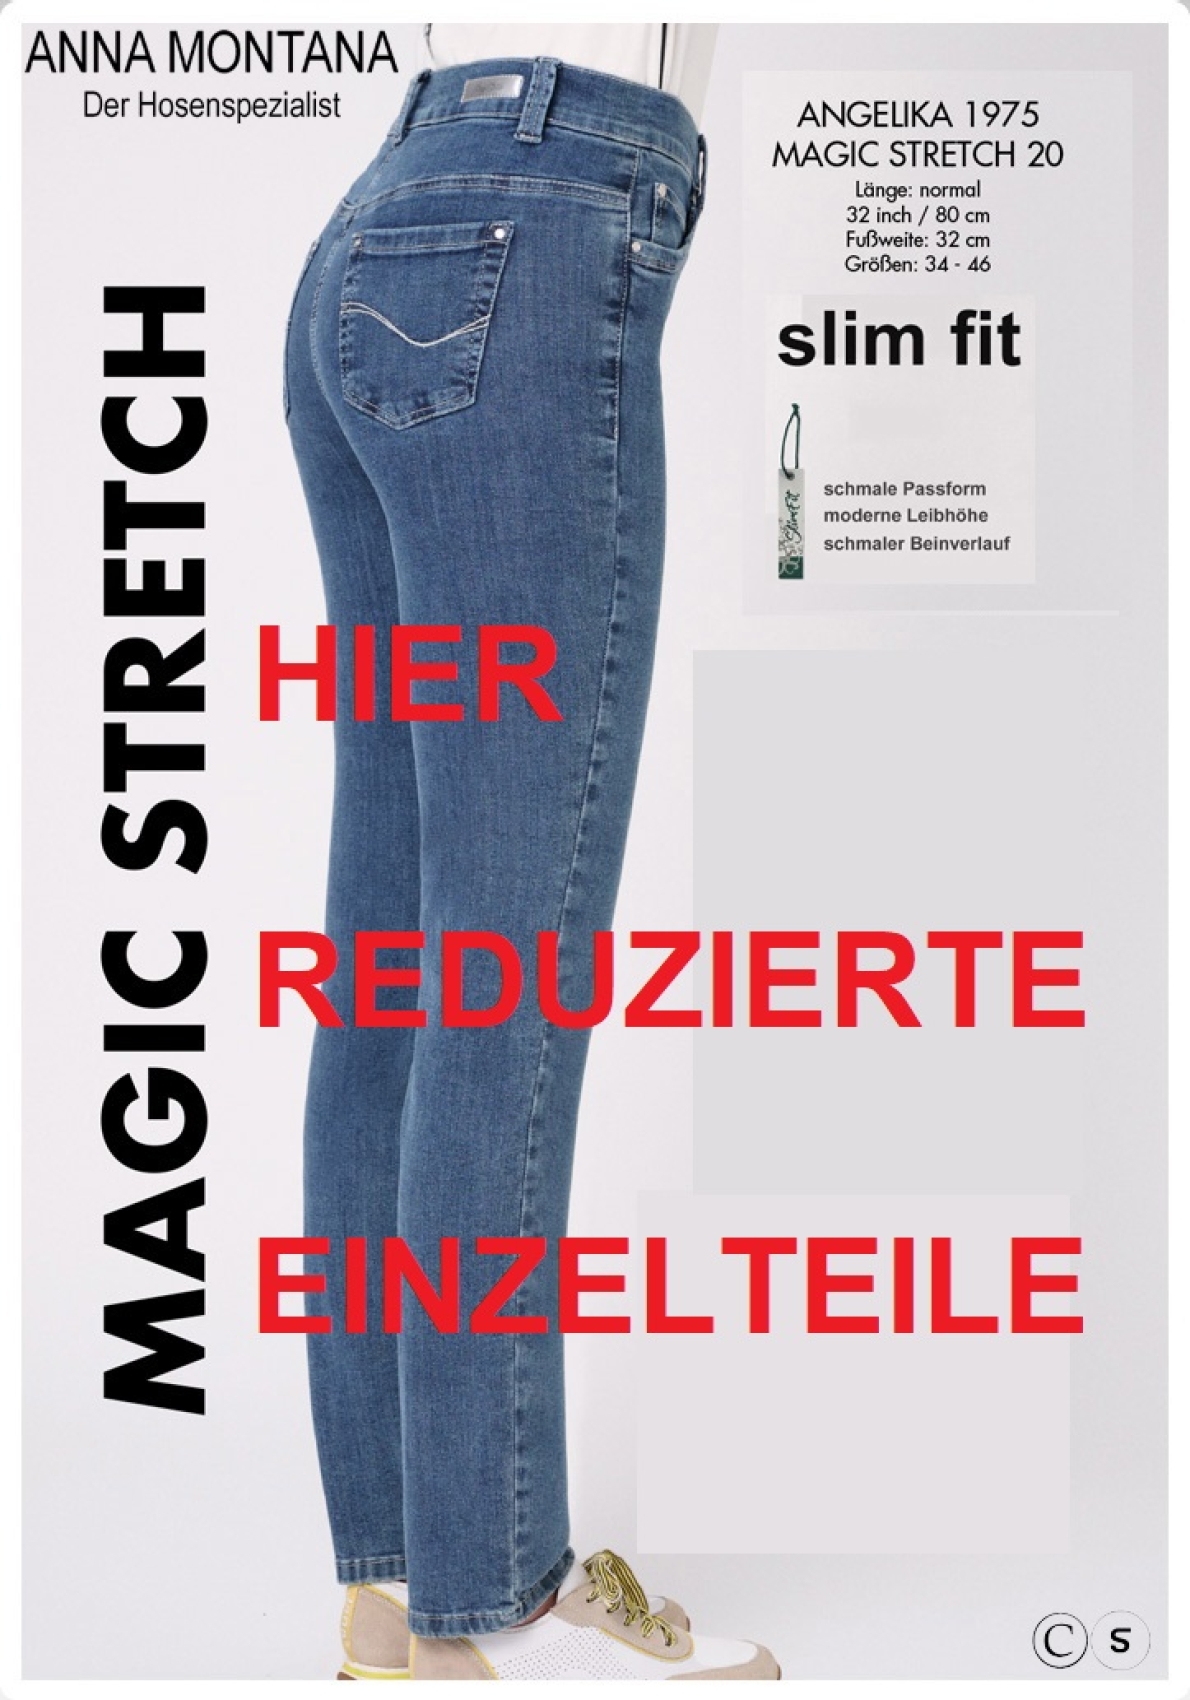 Angelika 1975, reduzierte Einzelteile / ER / Magic Stretch Hosen/Röhren Jeans ANNA MONTANA